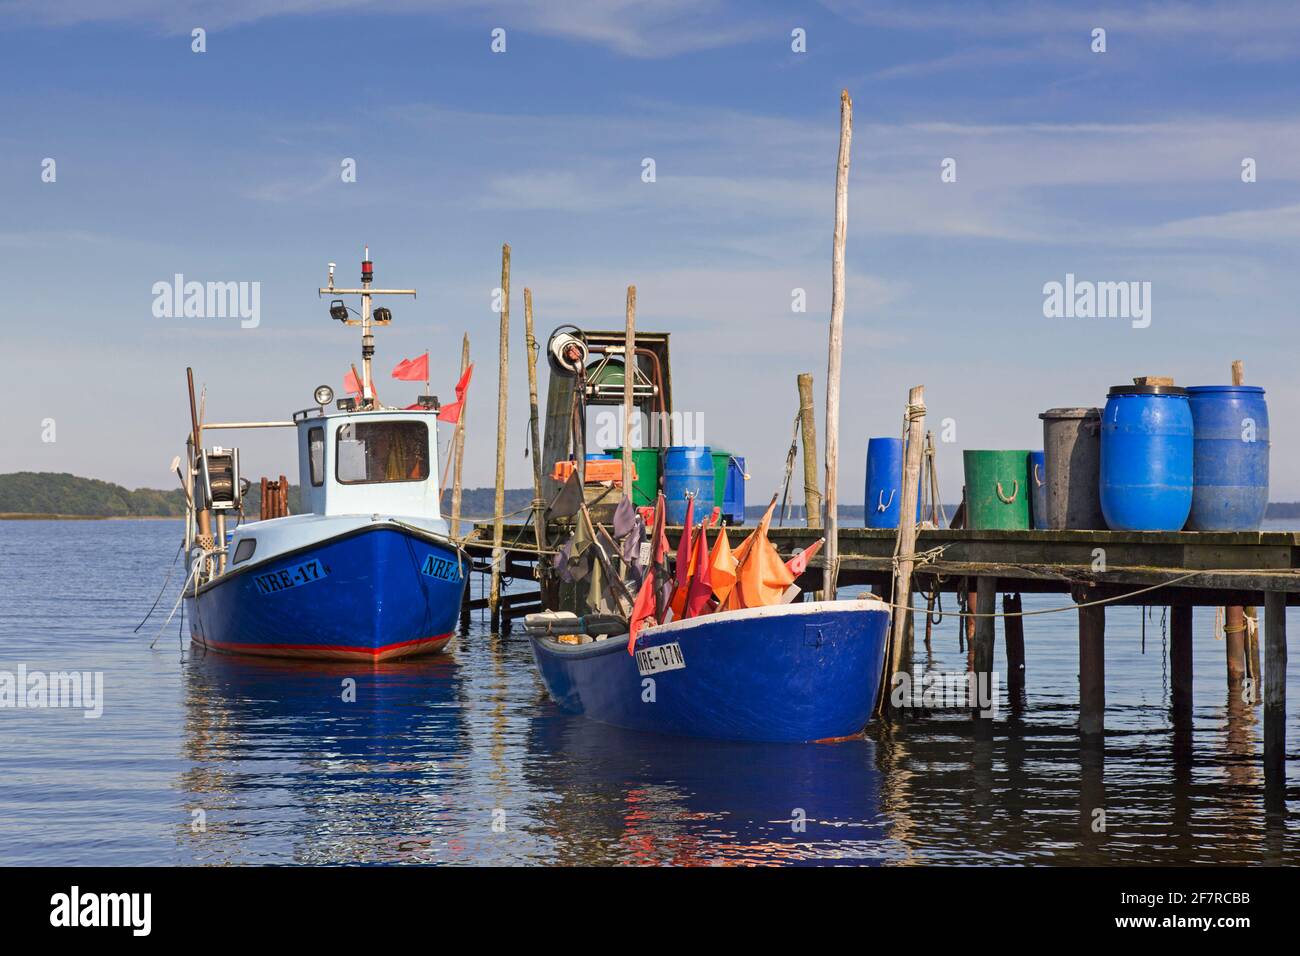 Barche da pesca ormeggiate lungo il molo di legno a Neu Reddevitz, Lancken-Granitz sull'isola di Rügen / Ruegen, Meclemburgo-Pomerania occidentale, Germania Foto Stock